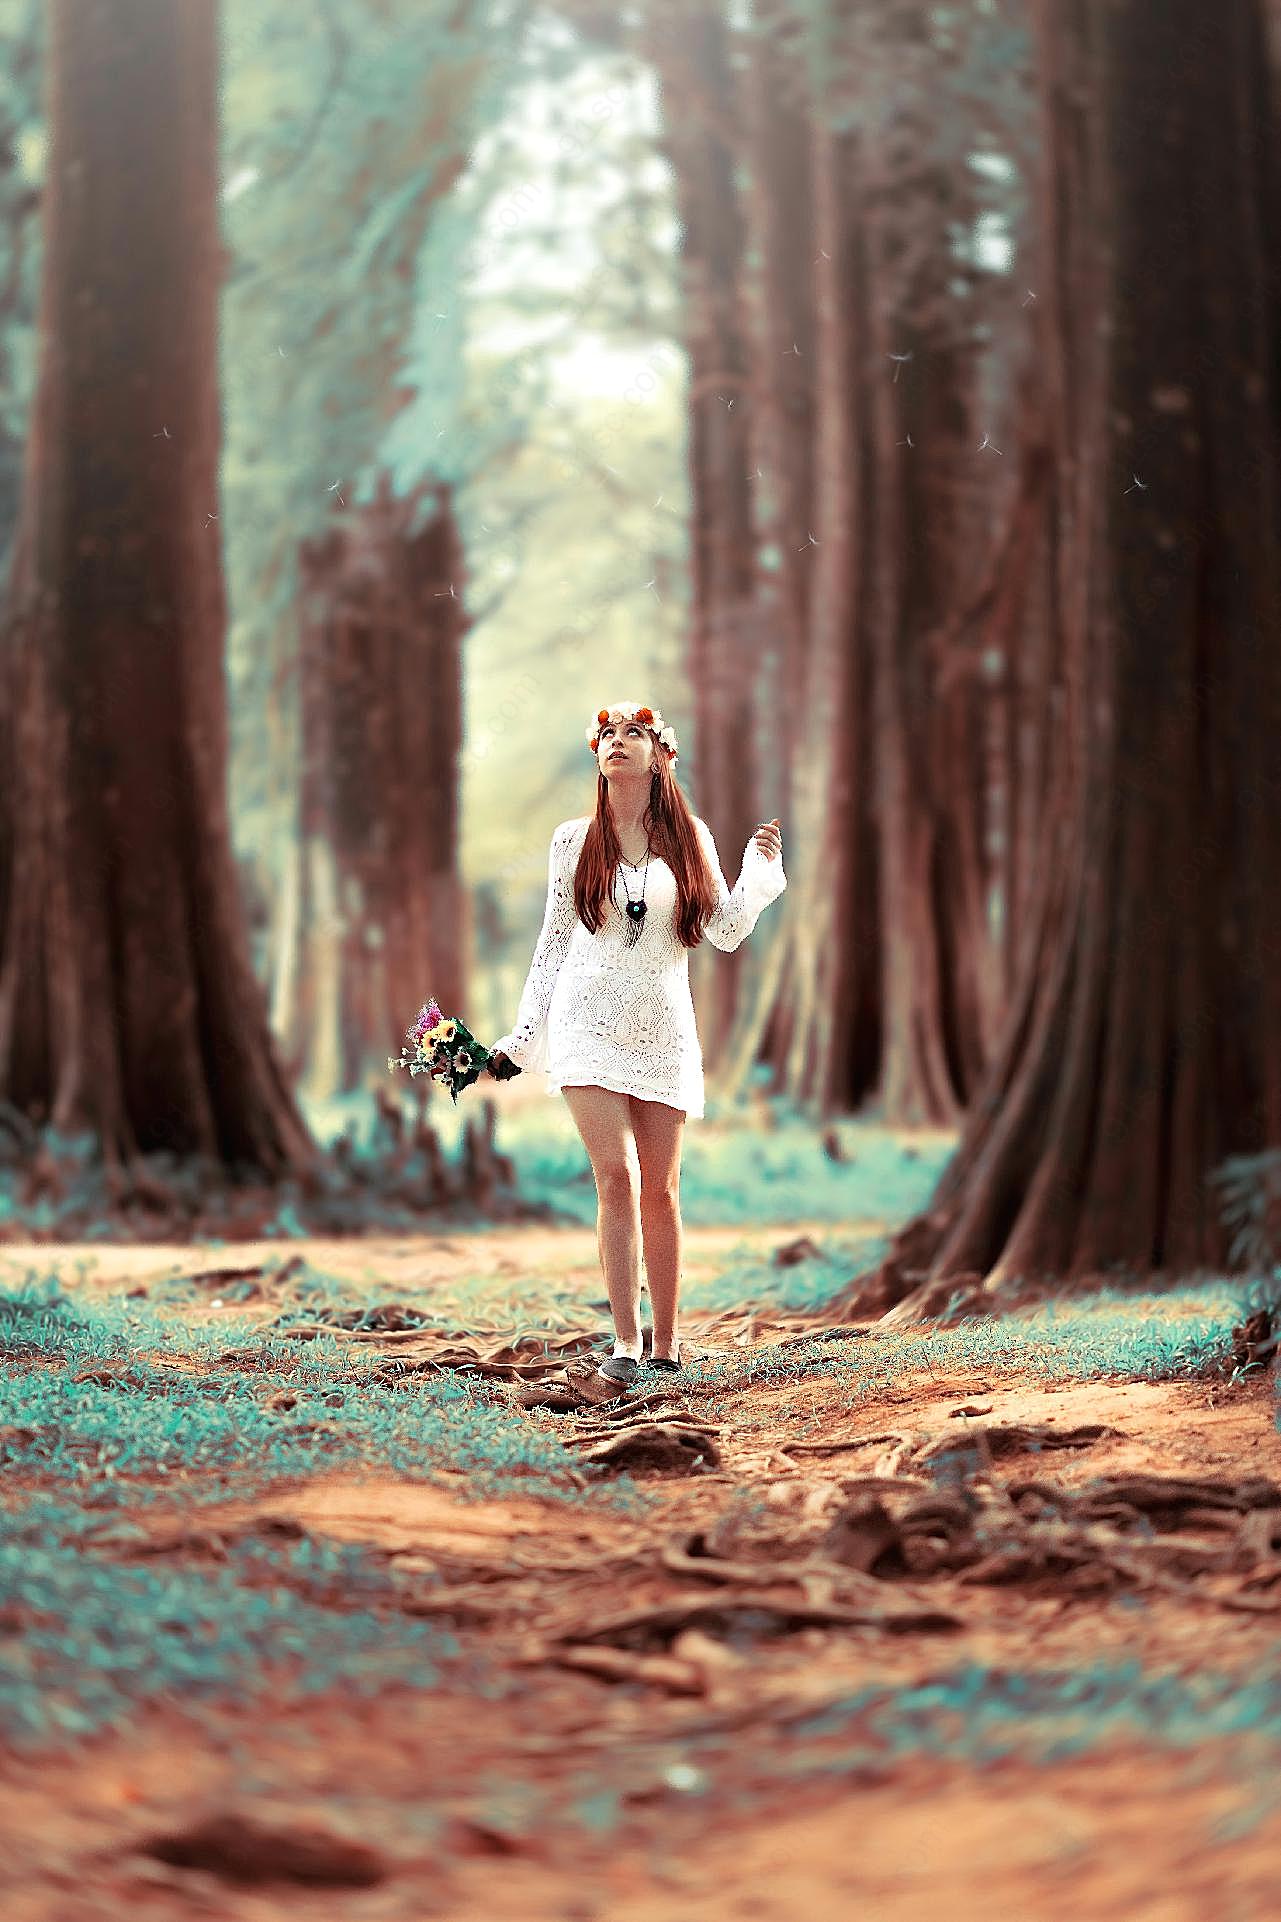 森林系列欧美女孩图片摄影人物